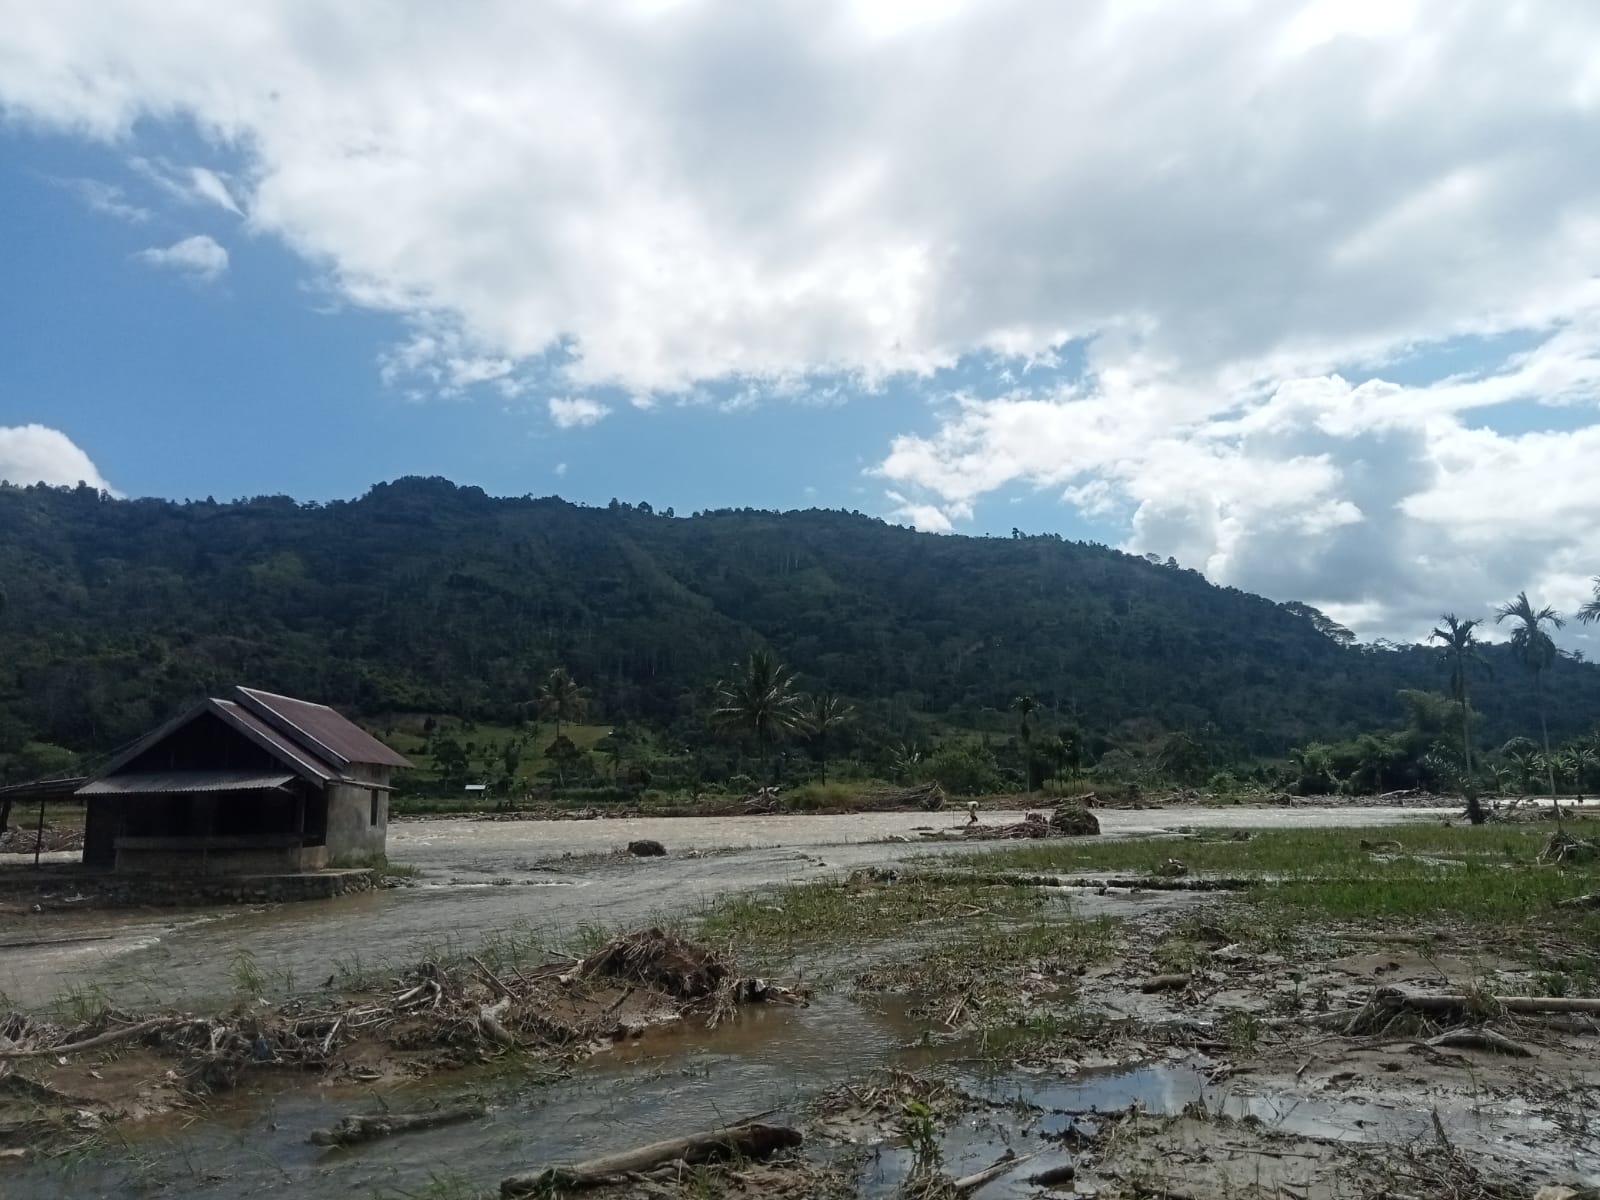 Puluhan Hektar Sawah di Lebong Hilang akibat Banjir Bandang, Pemerintah Diminta Bertindak Cepat